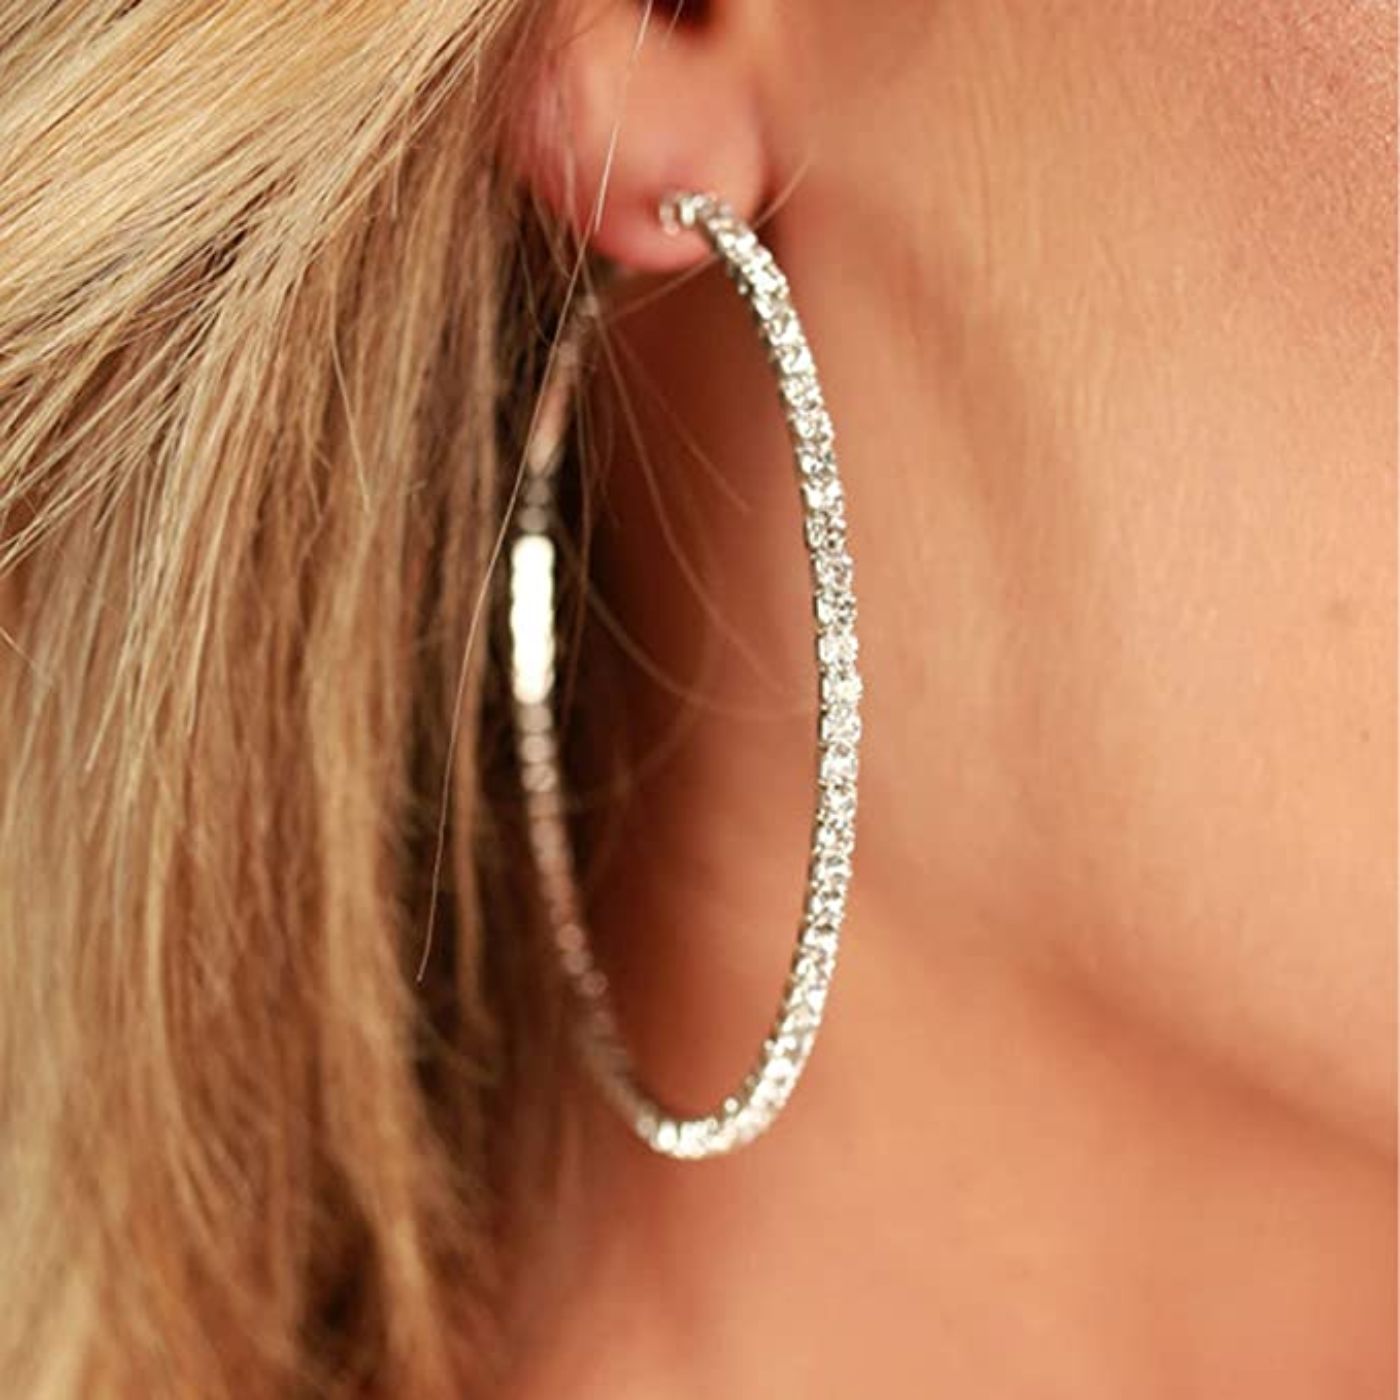 Silver Zircon Large Hoop Earrings For Women